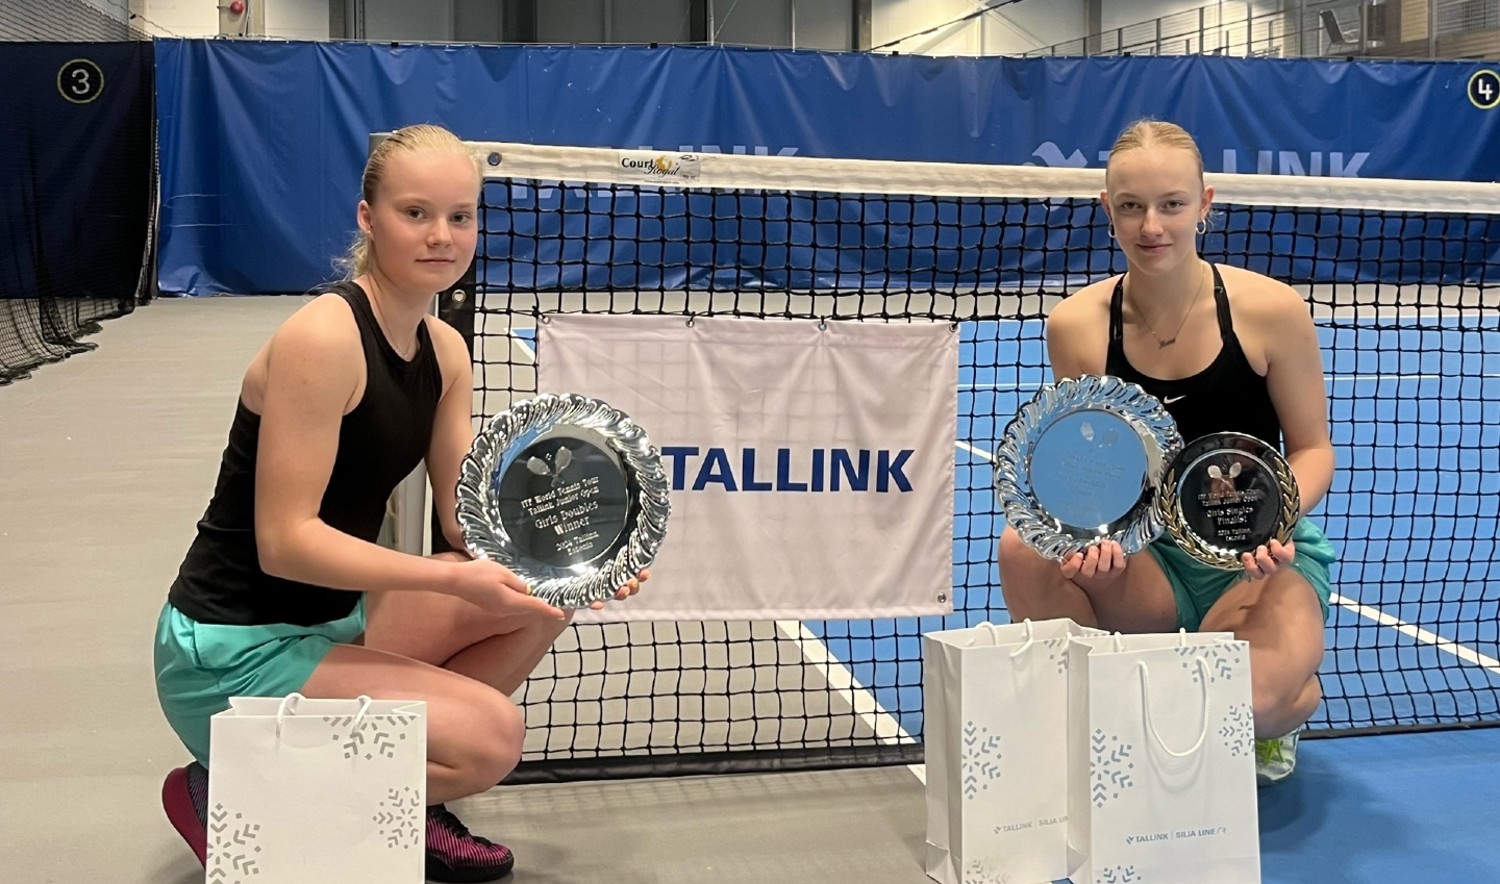 Täna lõppes Tallink tennisekeskuses ITF-i juunioride J30 turniir Tallink Junior Open, kus Eesti sai esikoha mõlemas paarismängus ja noormeeste üksikmängus. Eduk